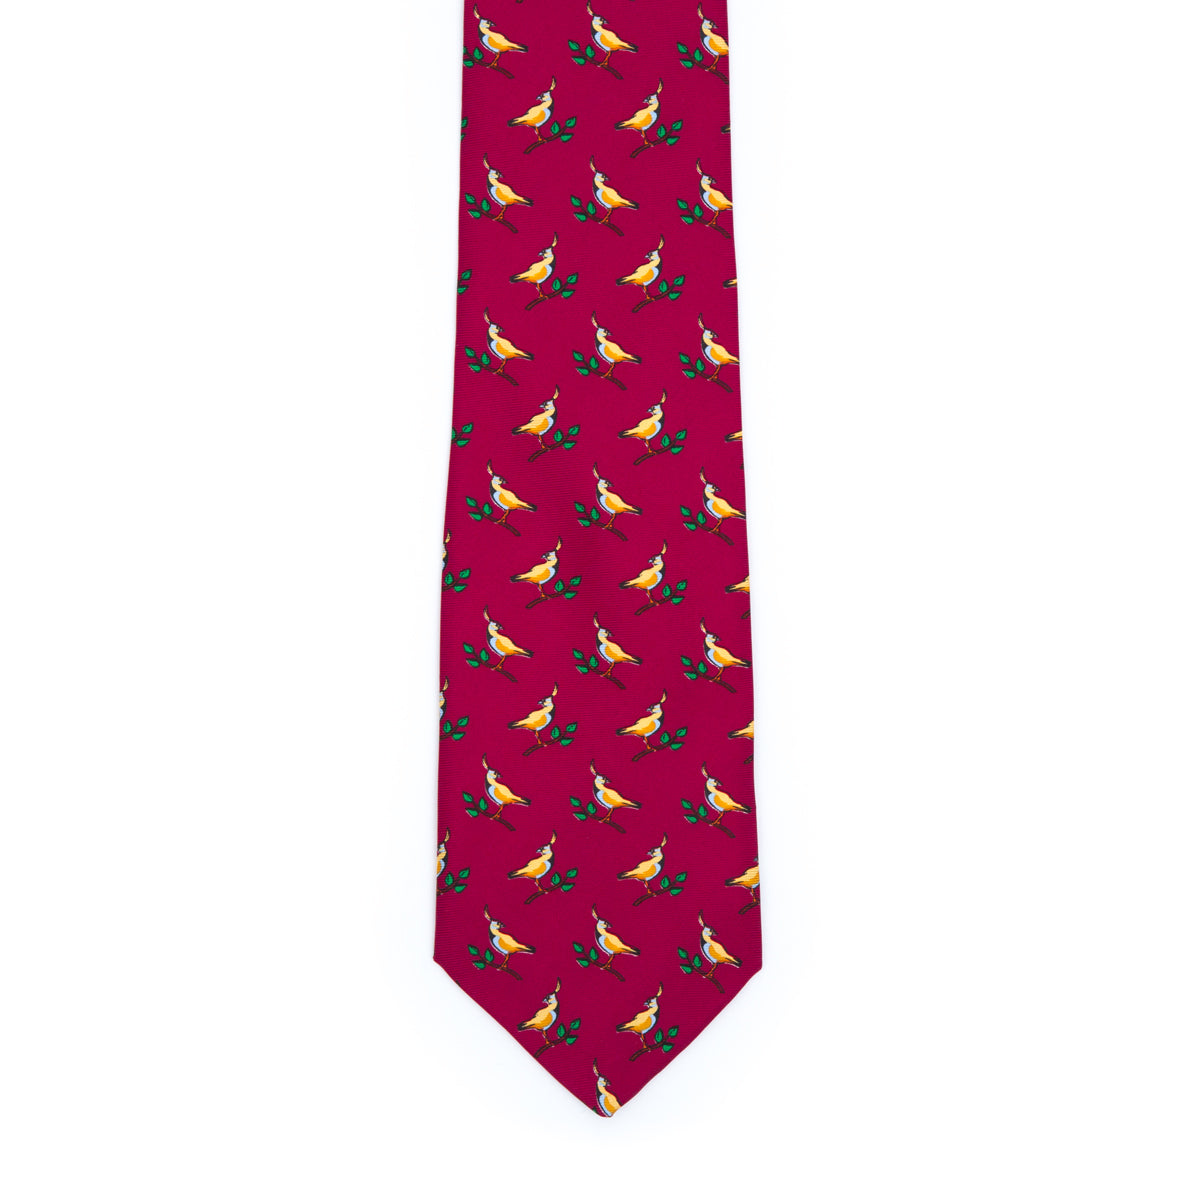 Exotic bird fantasy tie